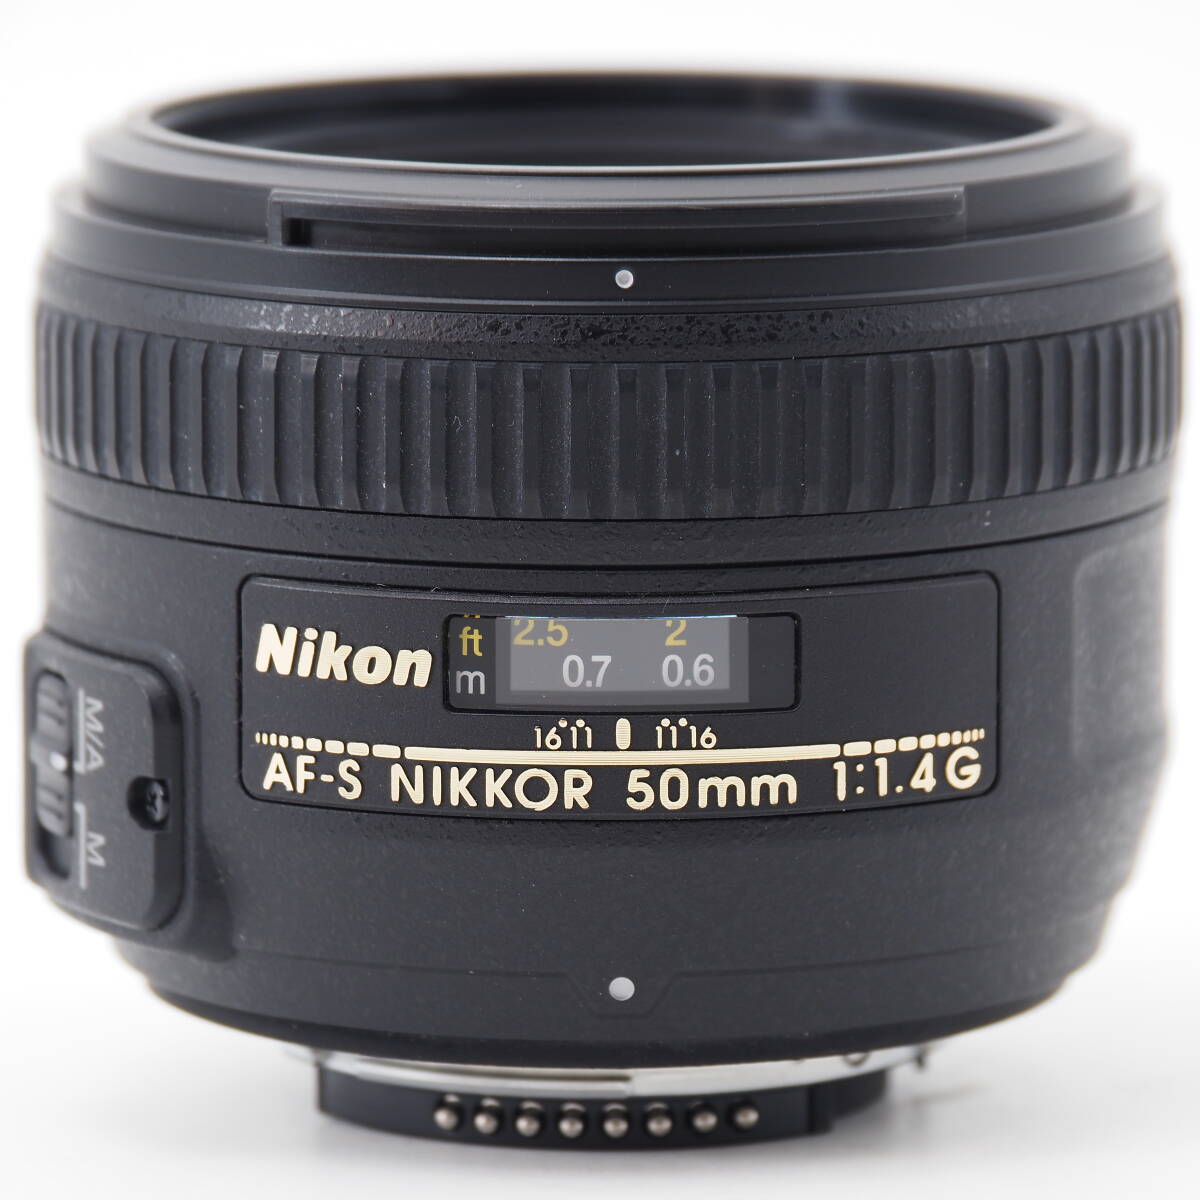 102043* finest quality goods *Nikon single burnt point lens AF-S NIKKOR 50mm f/1.4G full size correspondence 